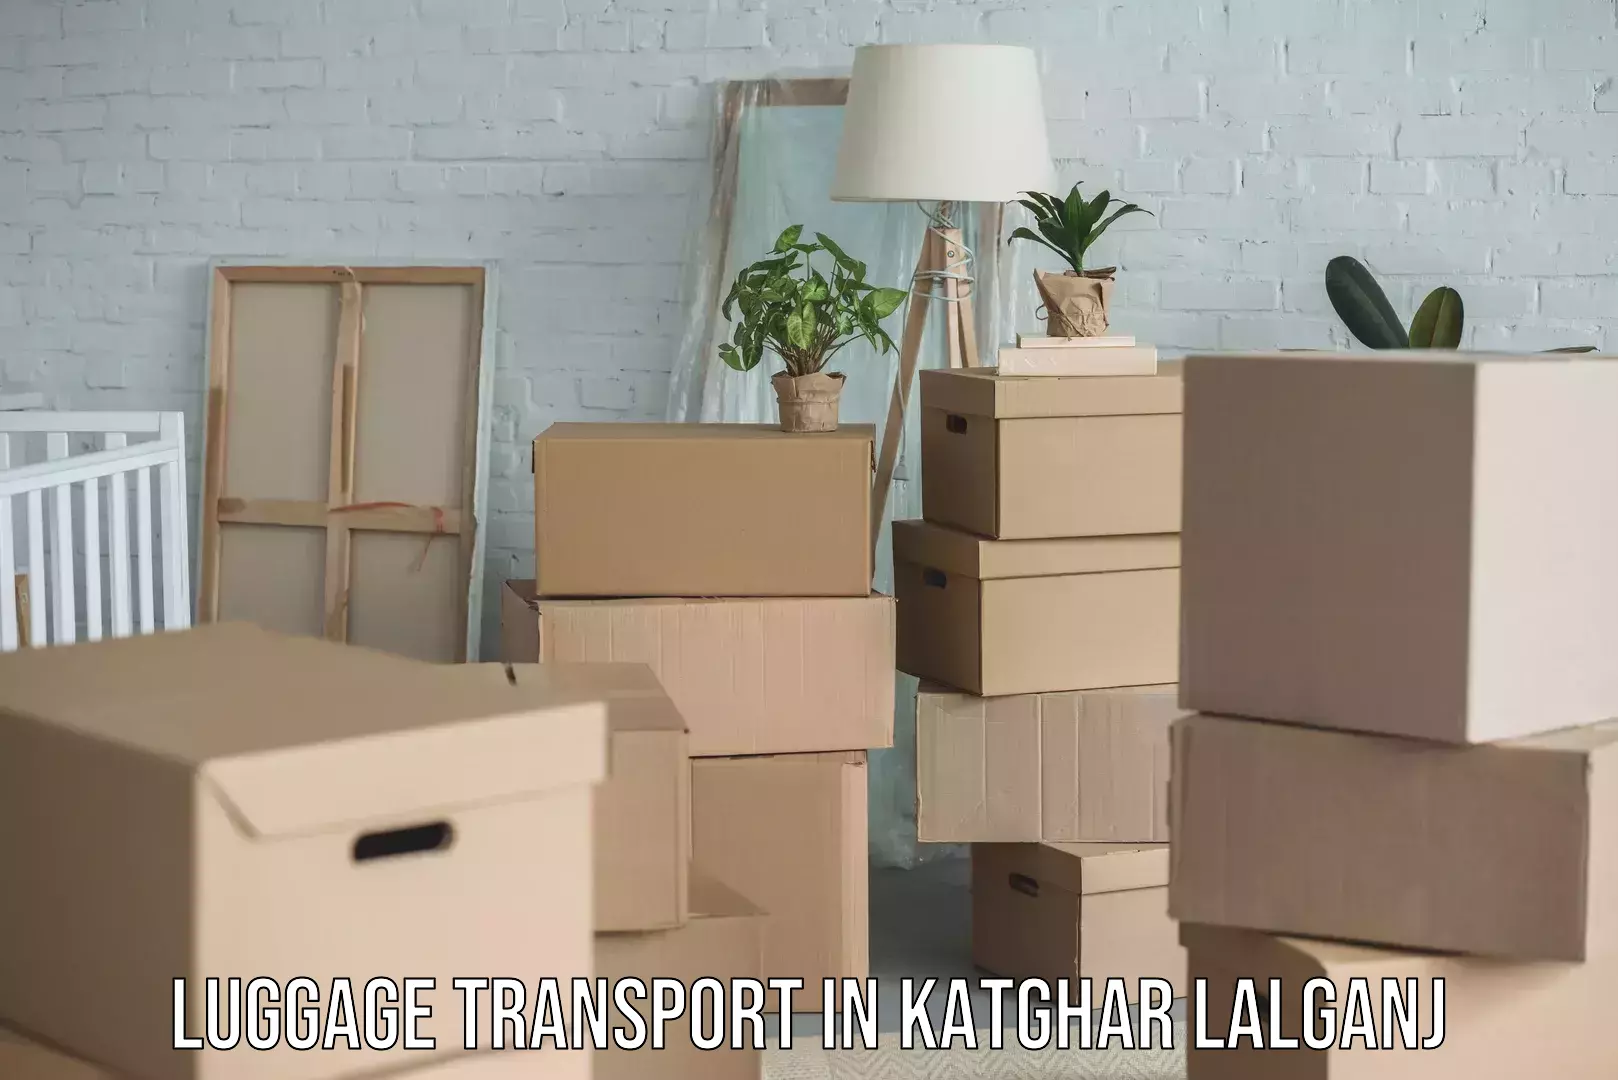 Baggage delivery optimization in Katghar Lalganj